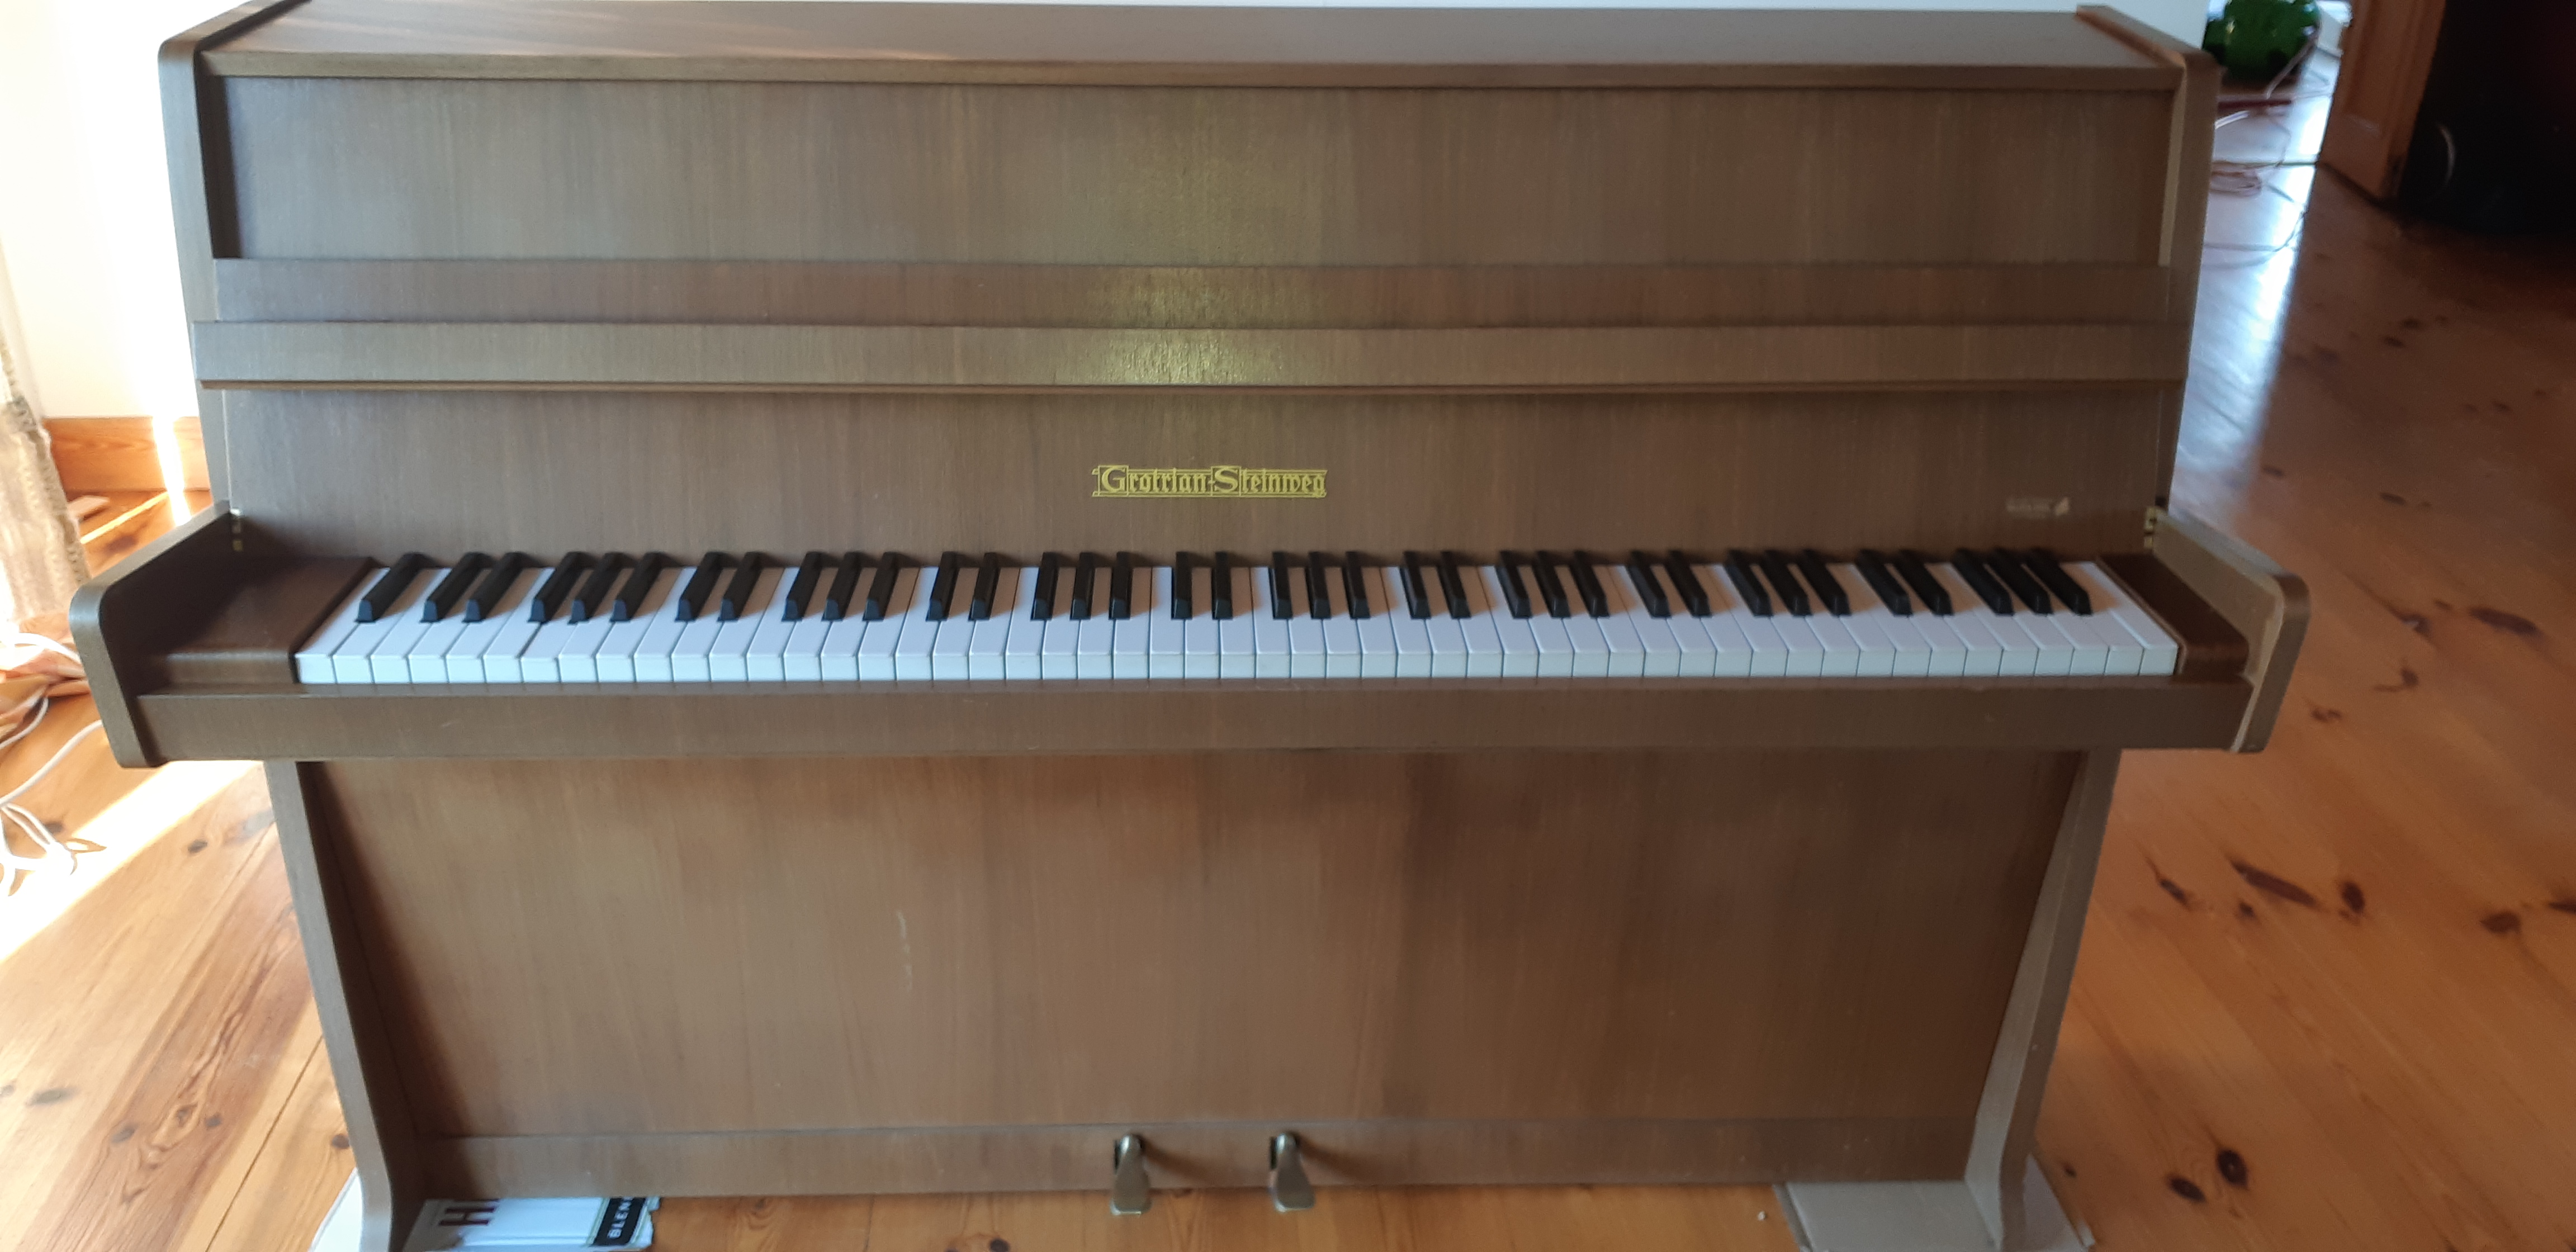 Grotrian Steinweg 101, piano